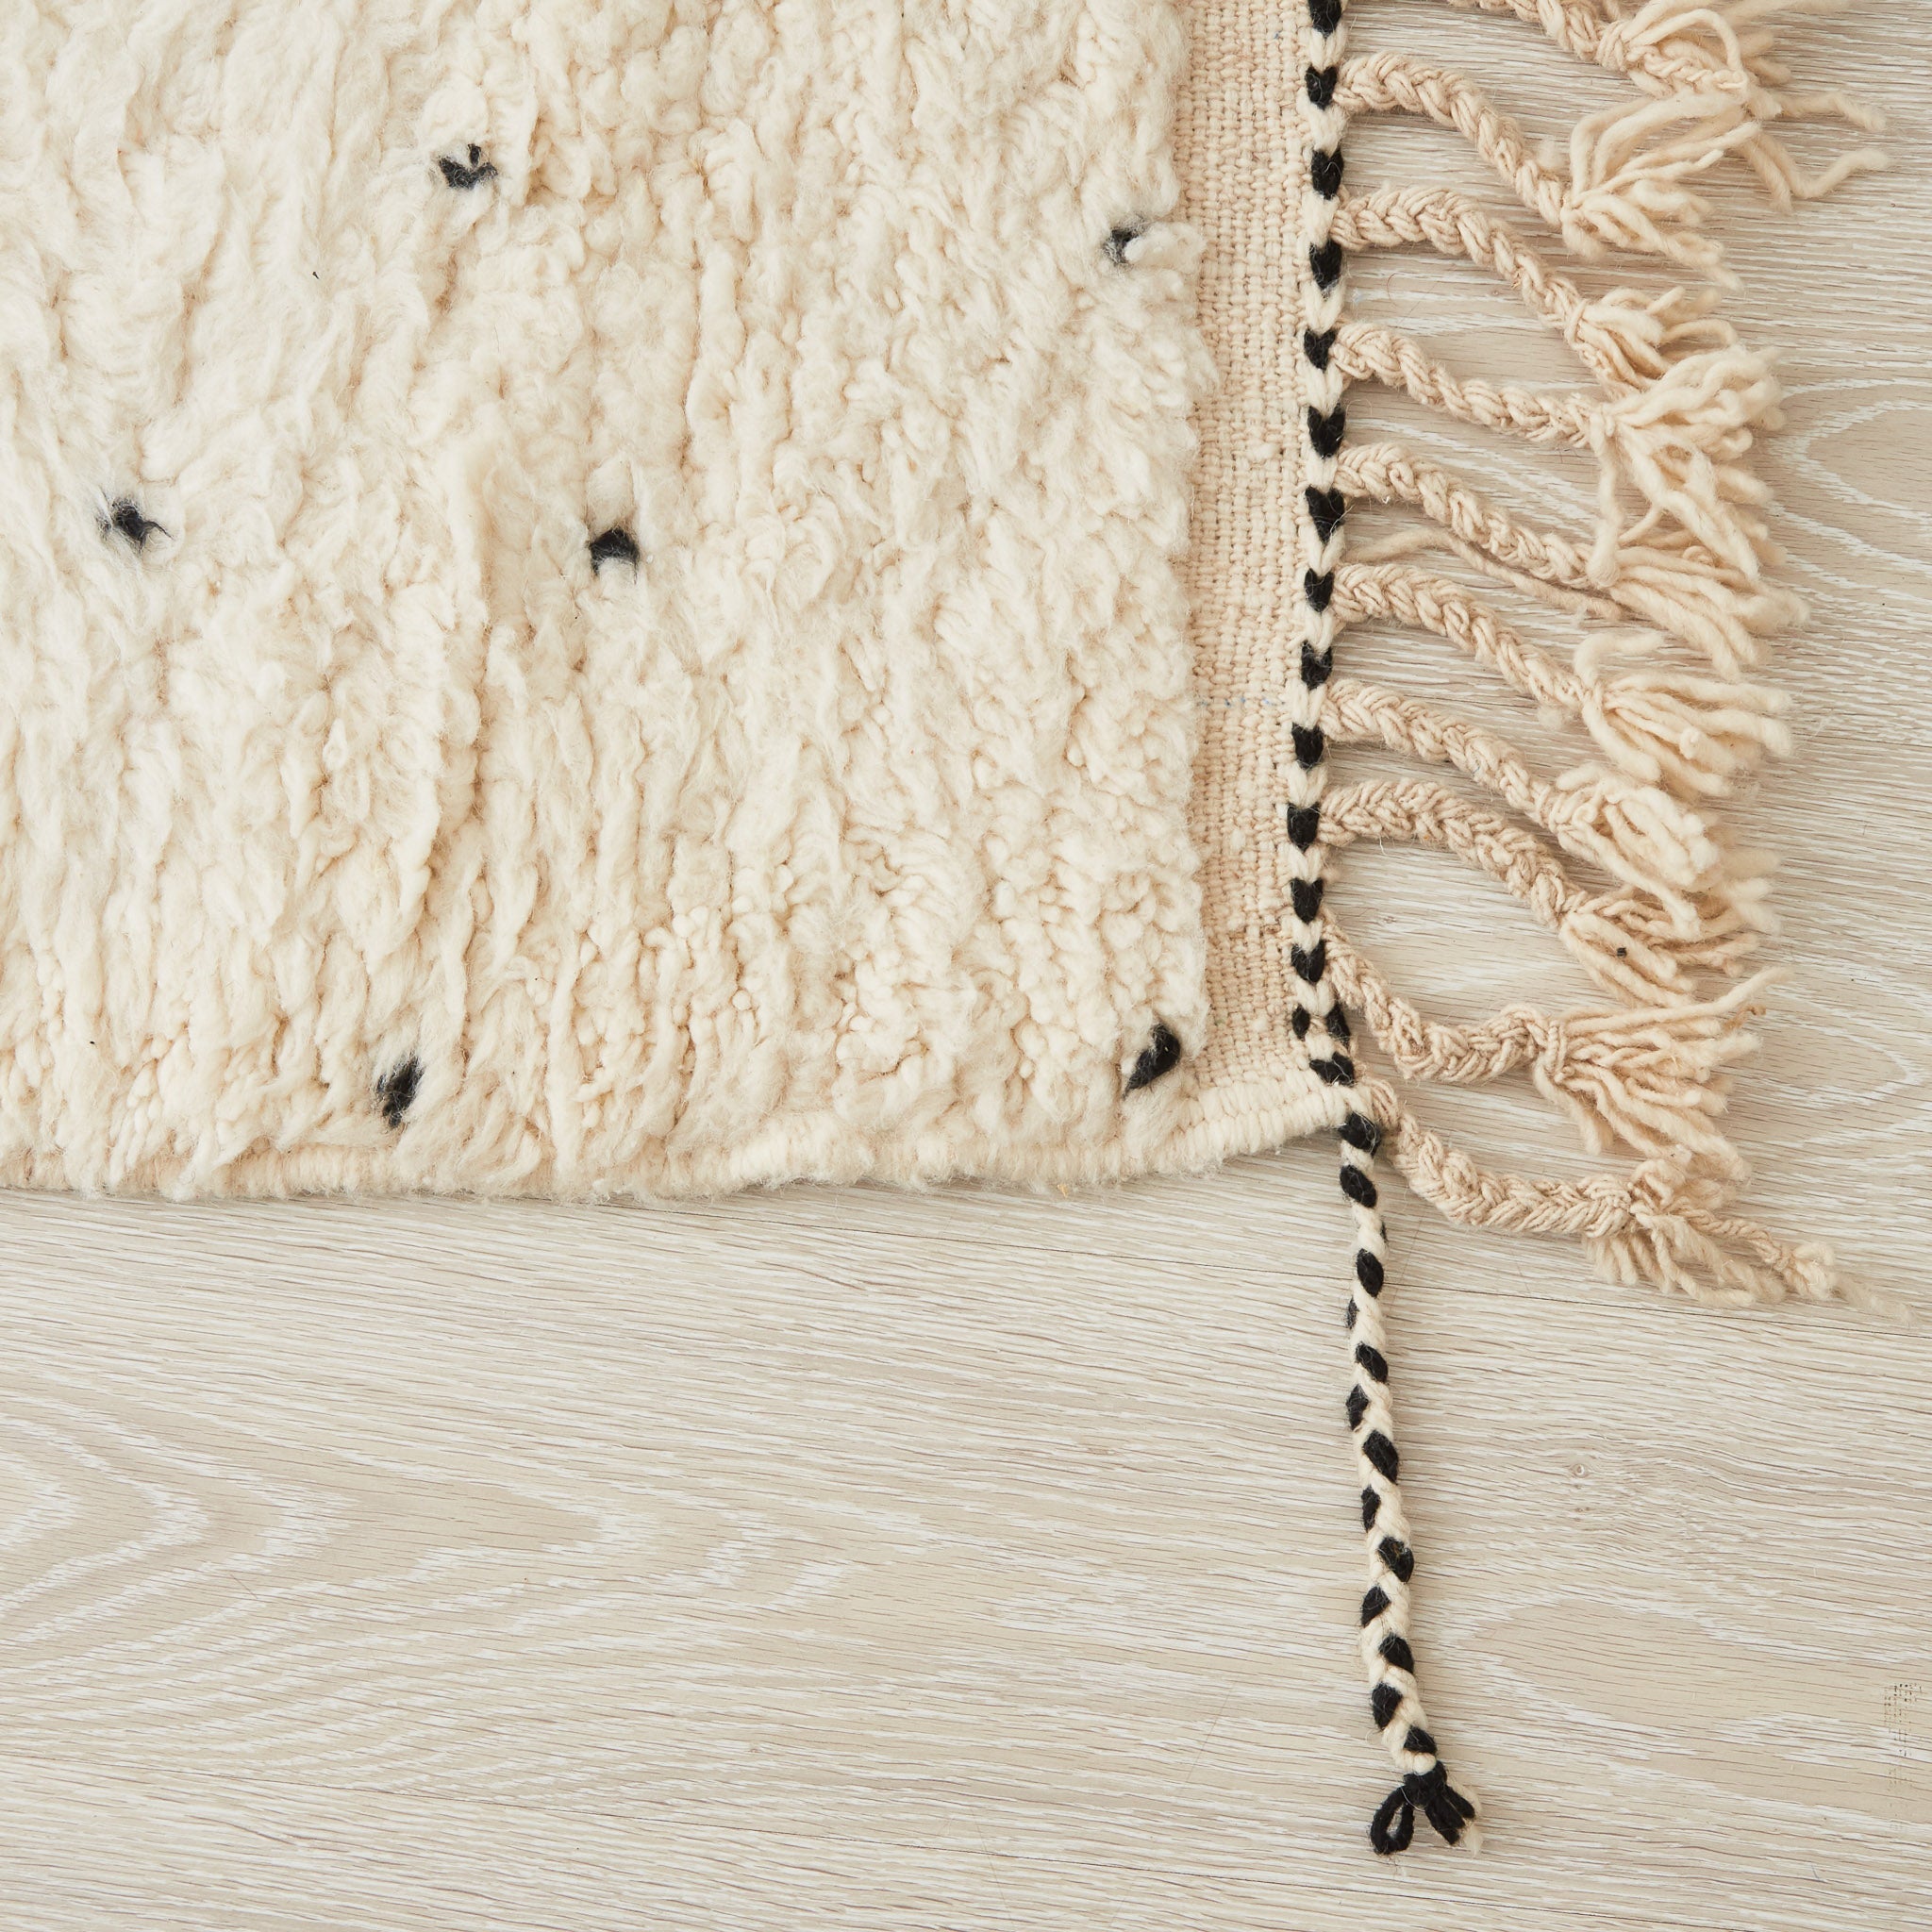 tappeto beni ourain con morbido pelo lungo pois neri e frangia bianca e nera dettaglio dell'angolo con due tipi di frange